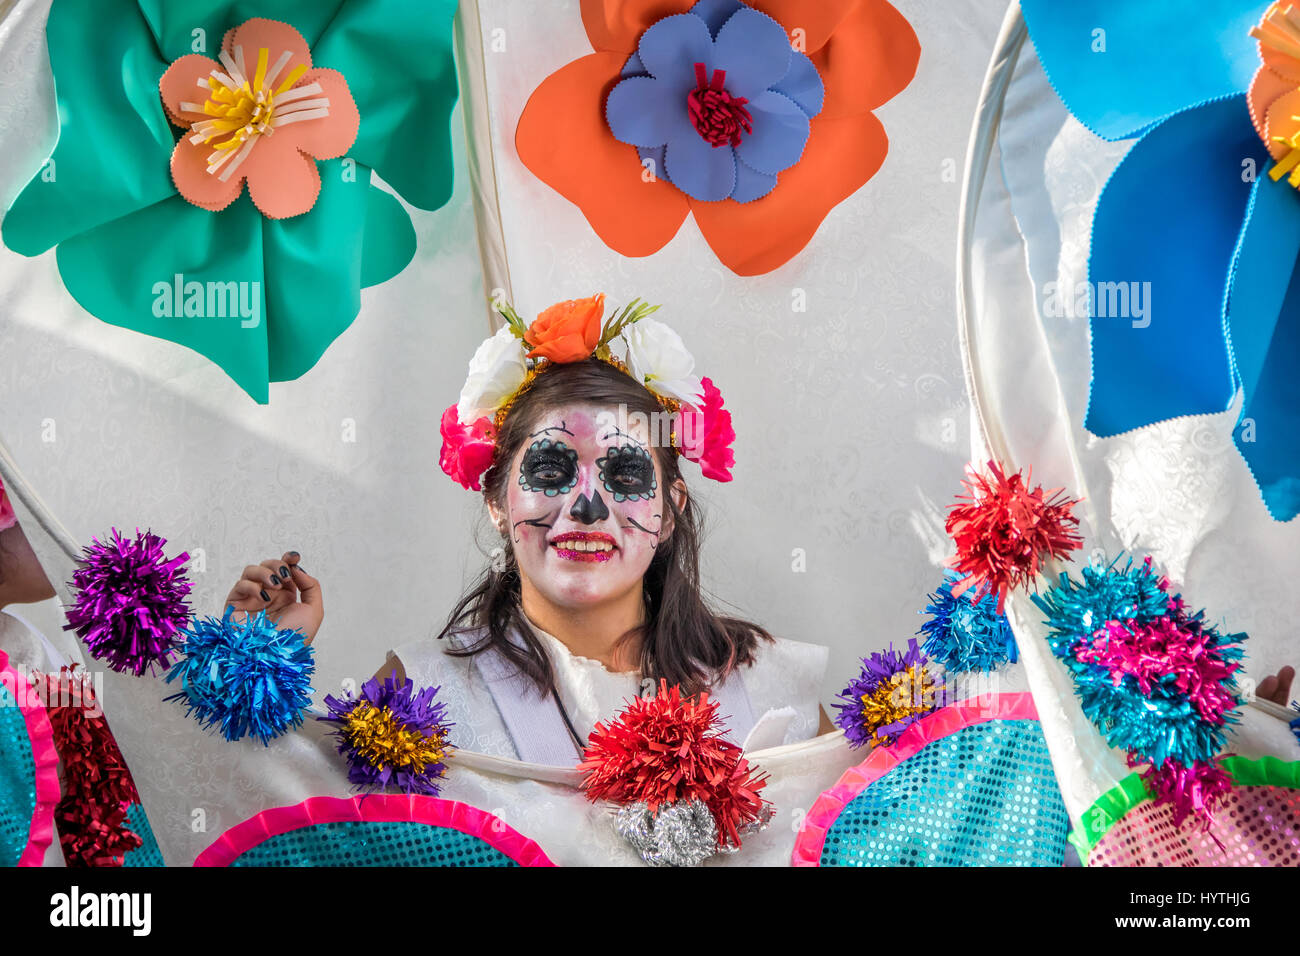 Day of the dead (Dia de los Muertos) parade in Mexico City - Mexico Stock Photo